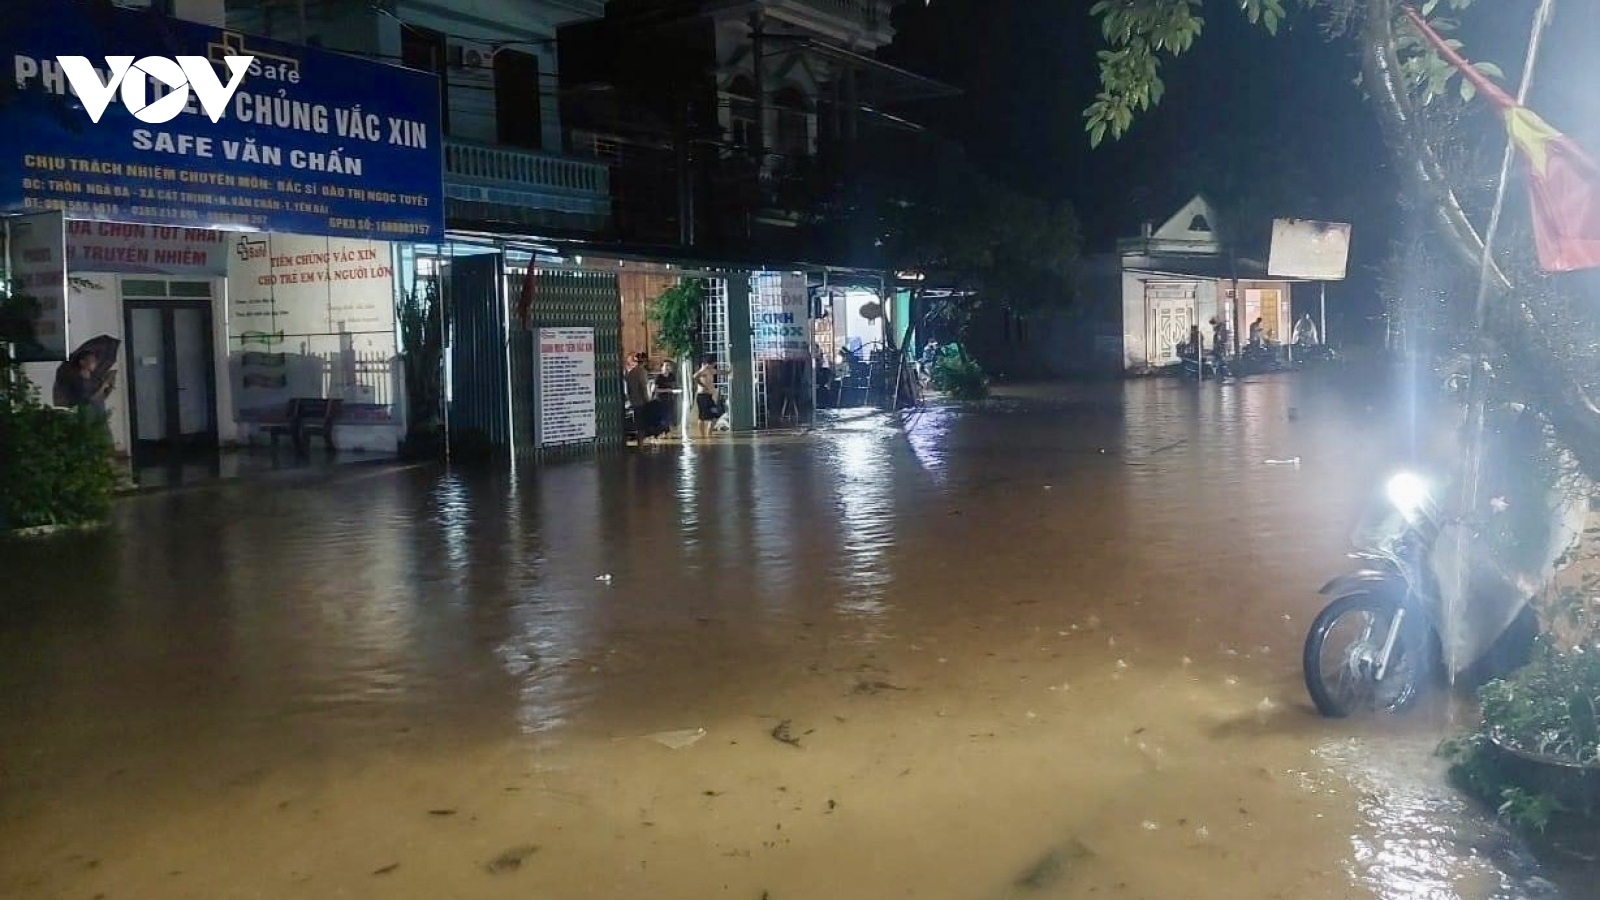 Mưa lũ gây ngập úng Quốc lộ 37 và khu dân cư ở Văn Chấn (Yên Bái)